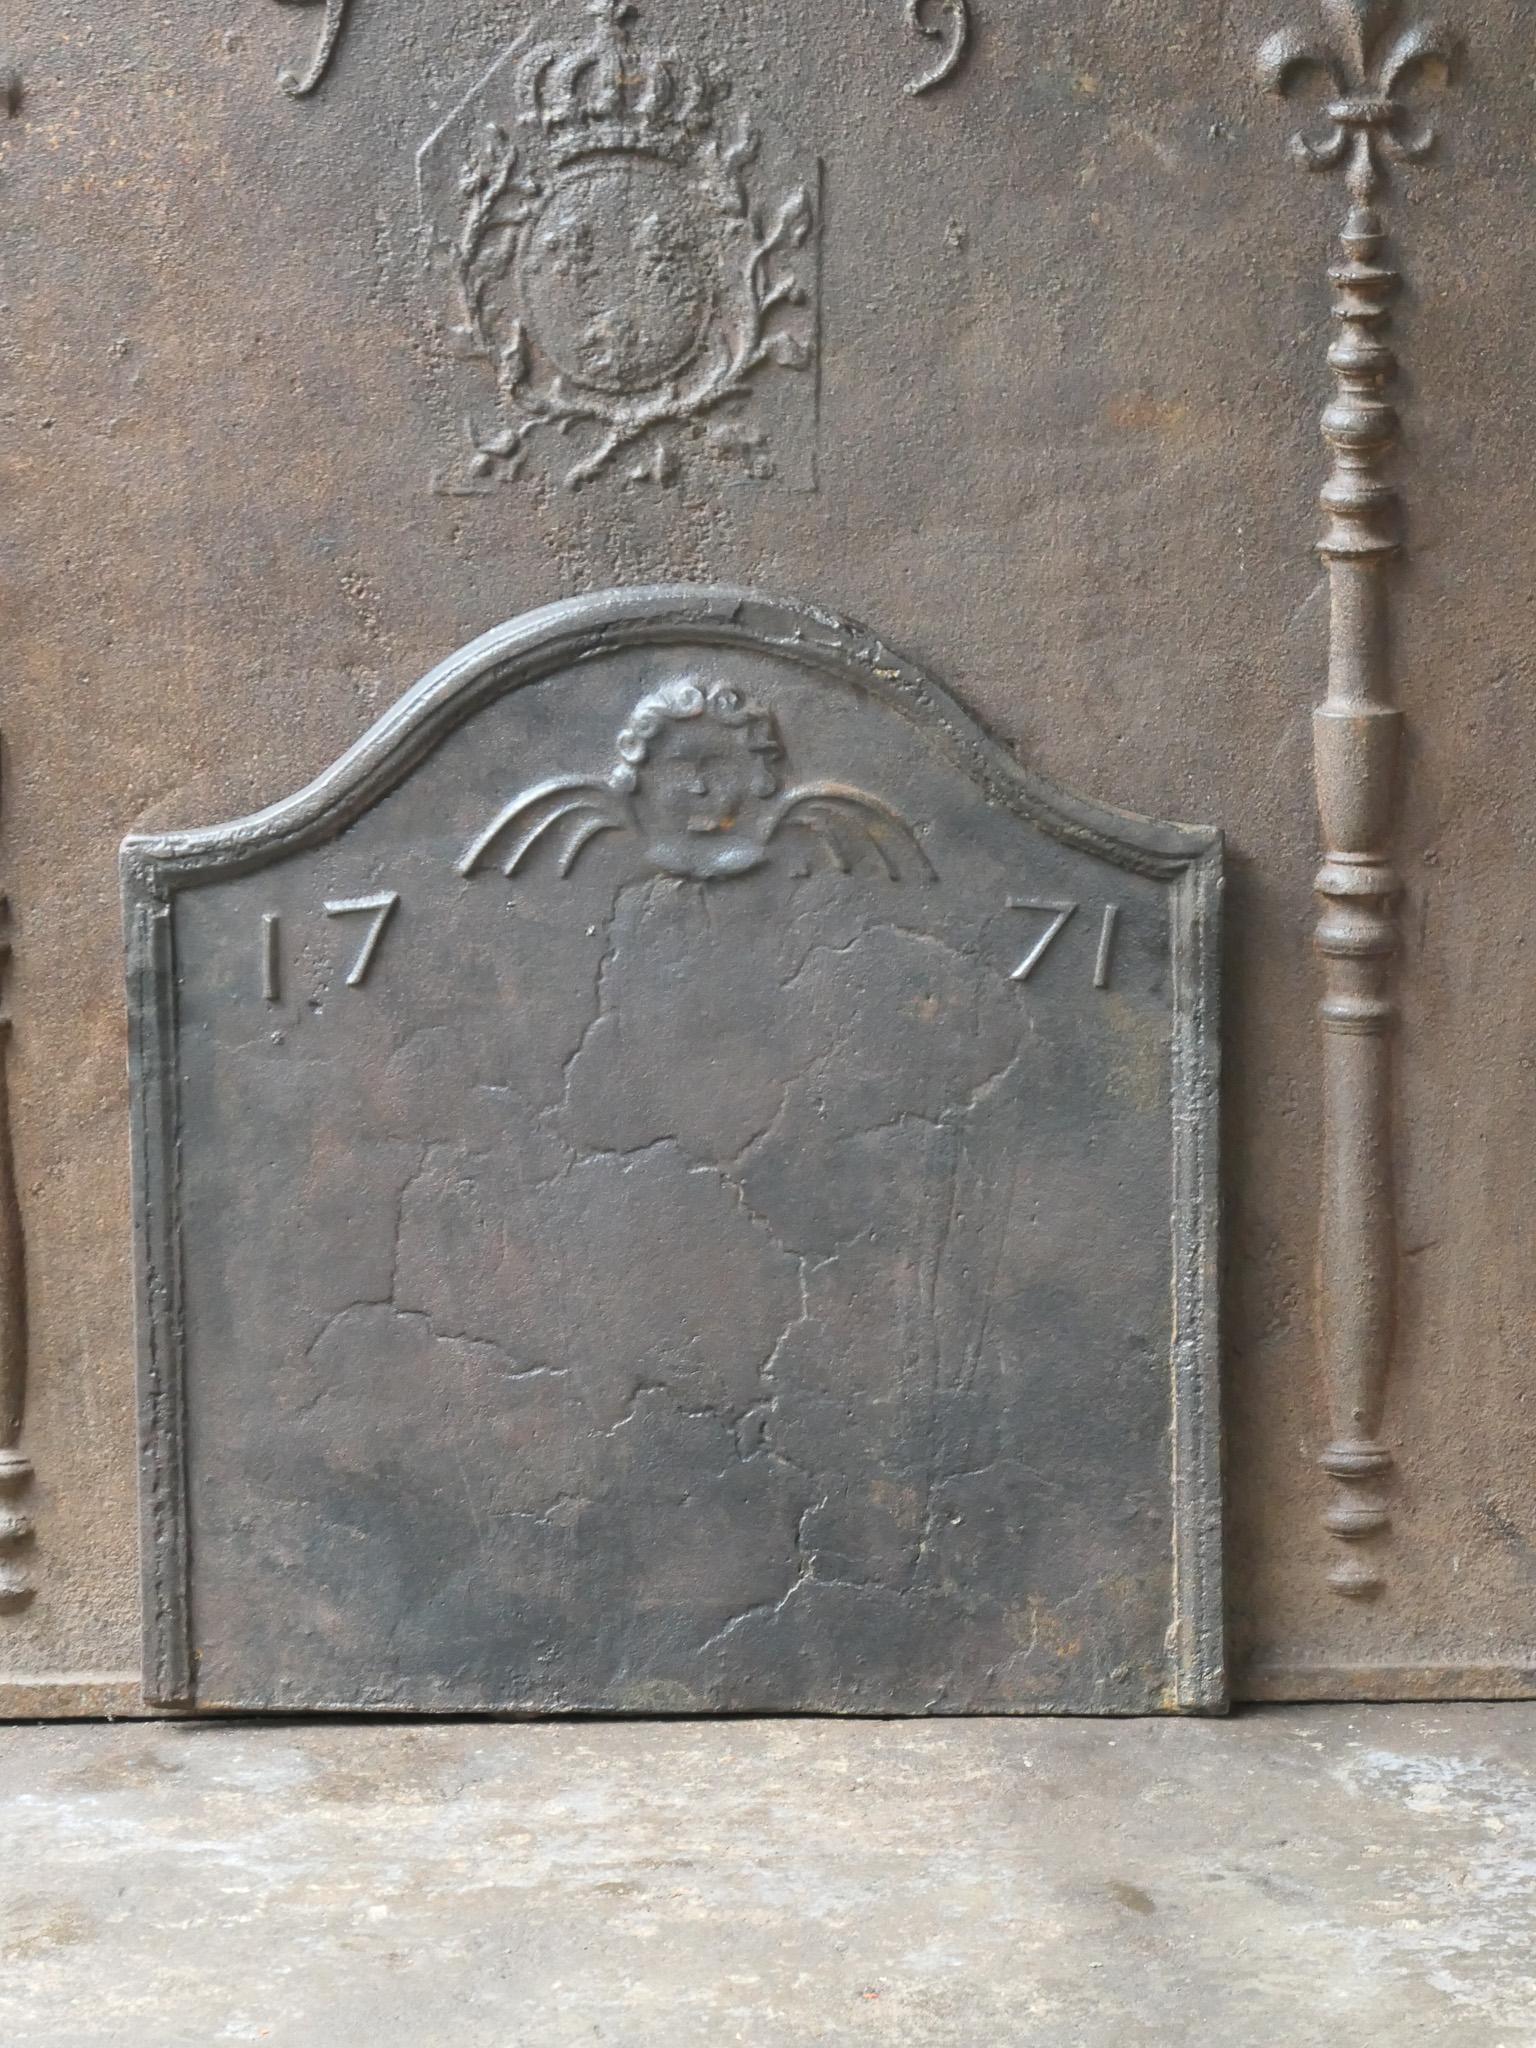 Französischer Kamin aus dem 18. Jahrhundert im Stil Louis XV. Das Herstellungsdatum 1771 ist in den Feuerboden eingegossen.

Die Feuerrückwand hat eine natürliche braune Patina. Auf Wunsch kann es ohne Aufpreis schwarz / zinnfarben hergestellt